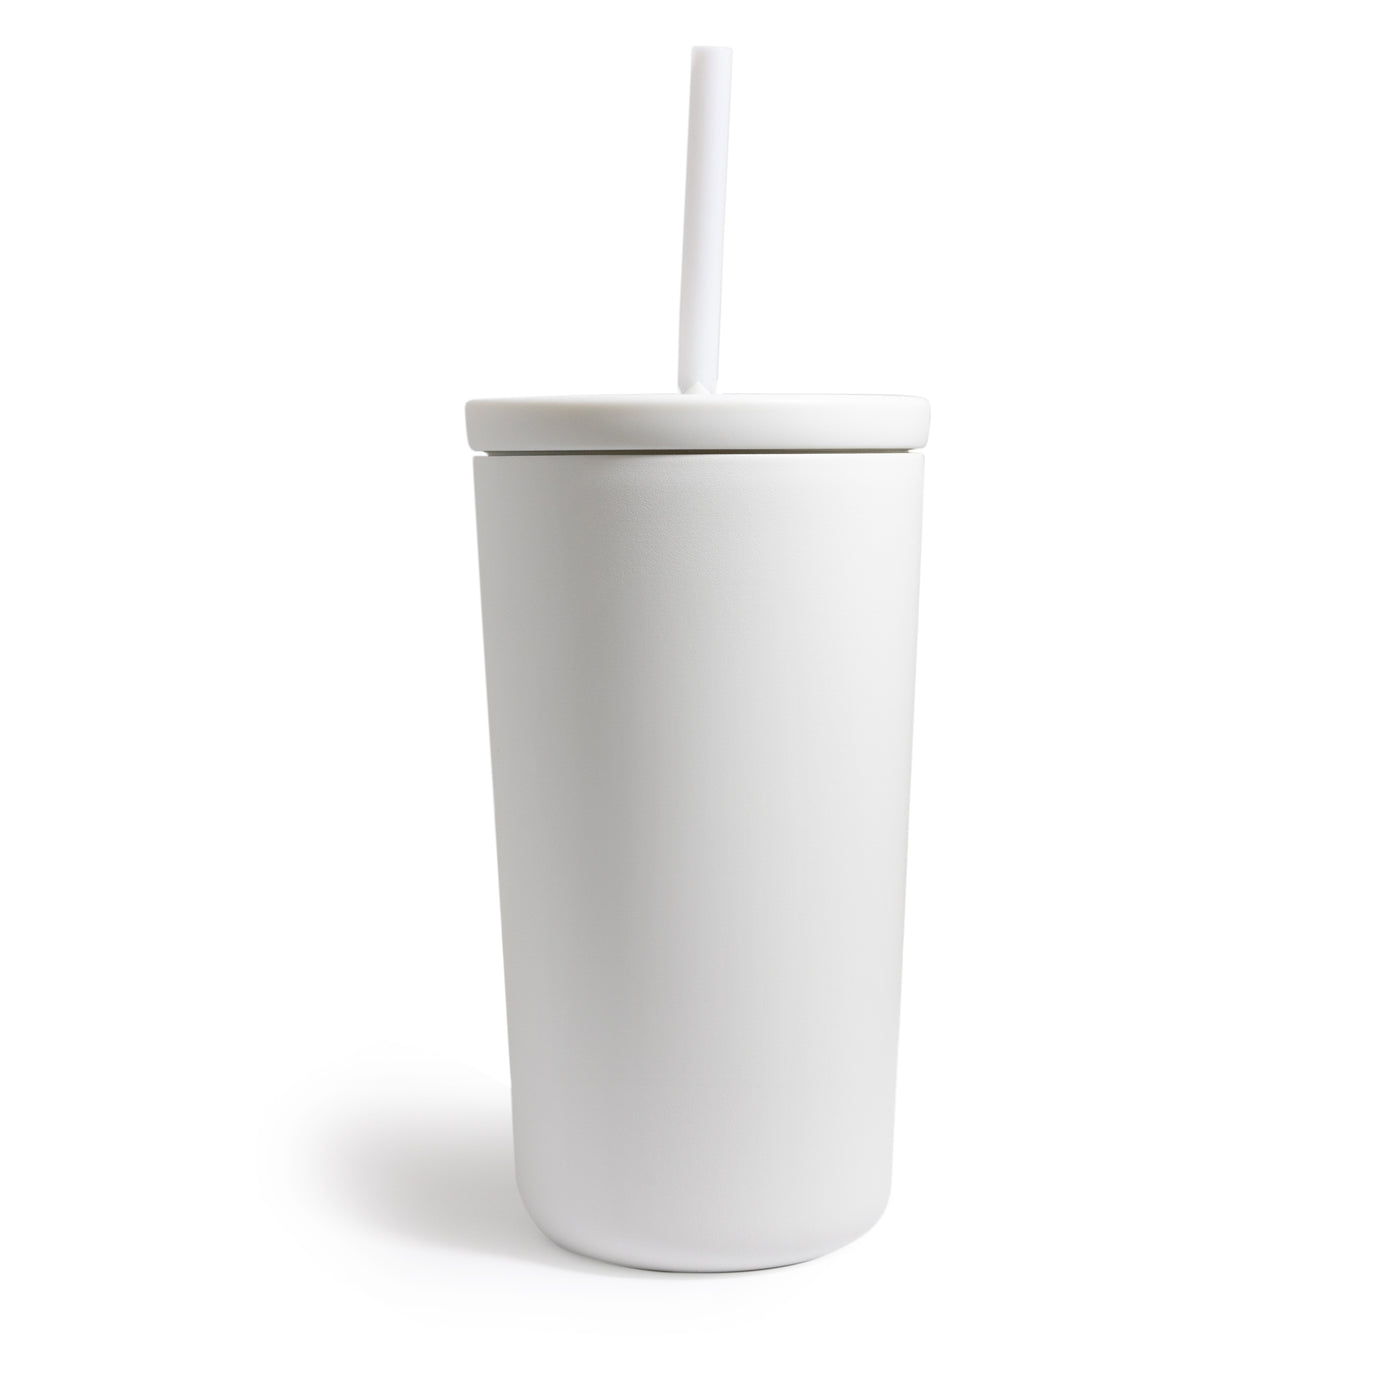 White tumbler with straw.